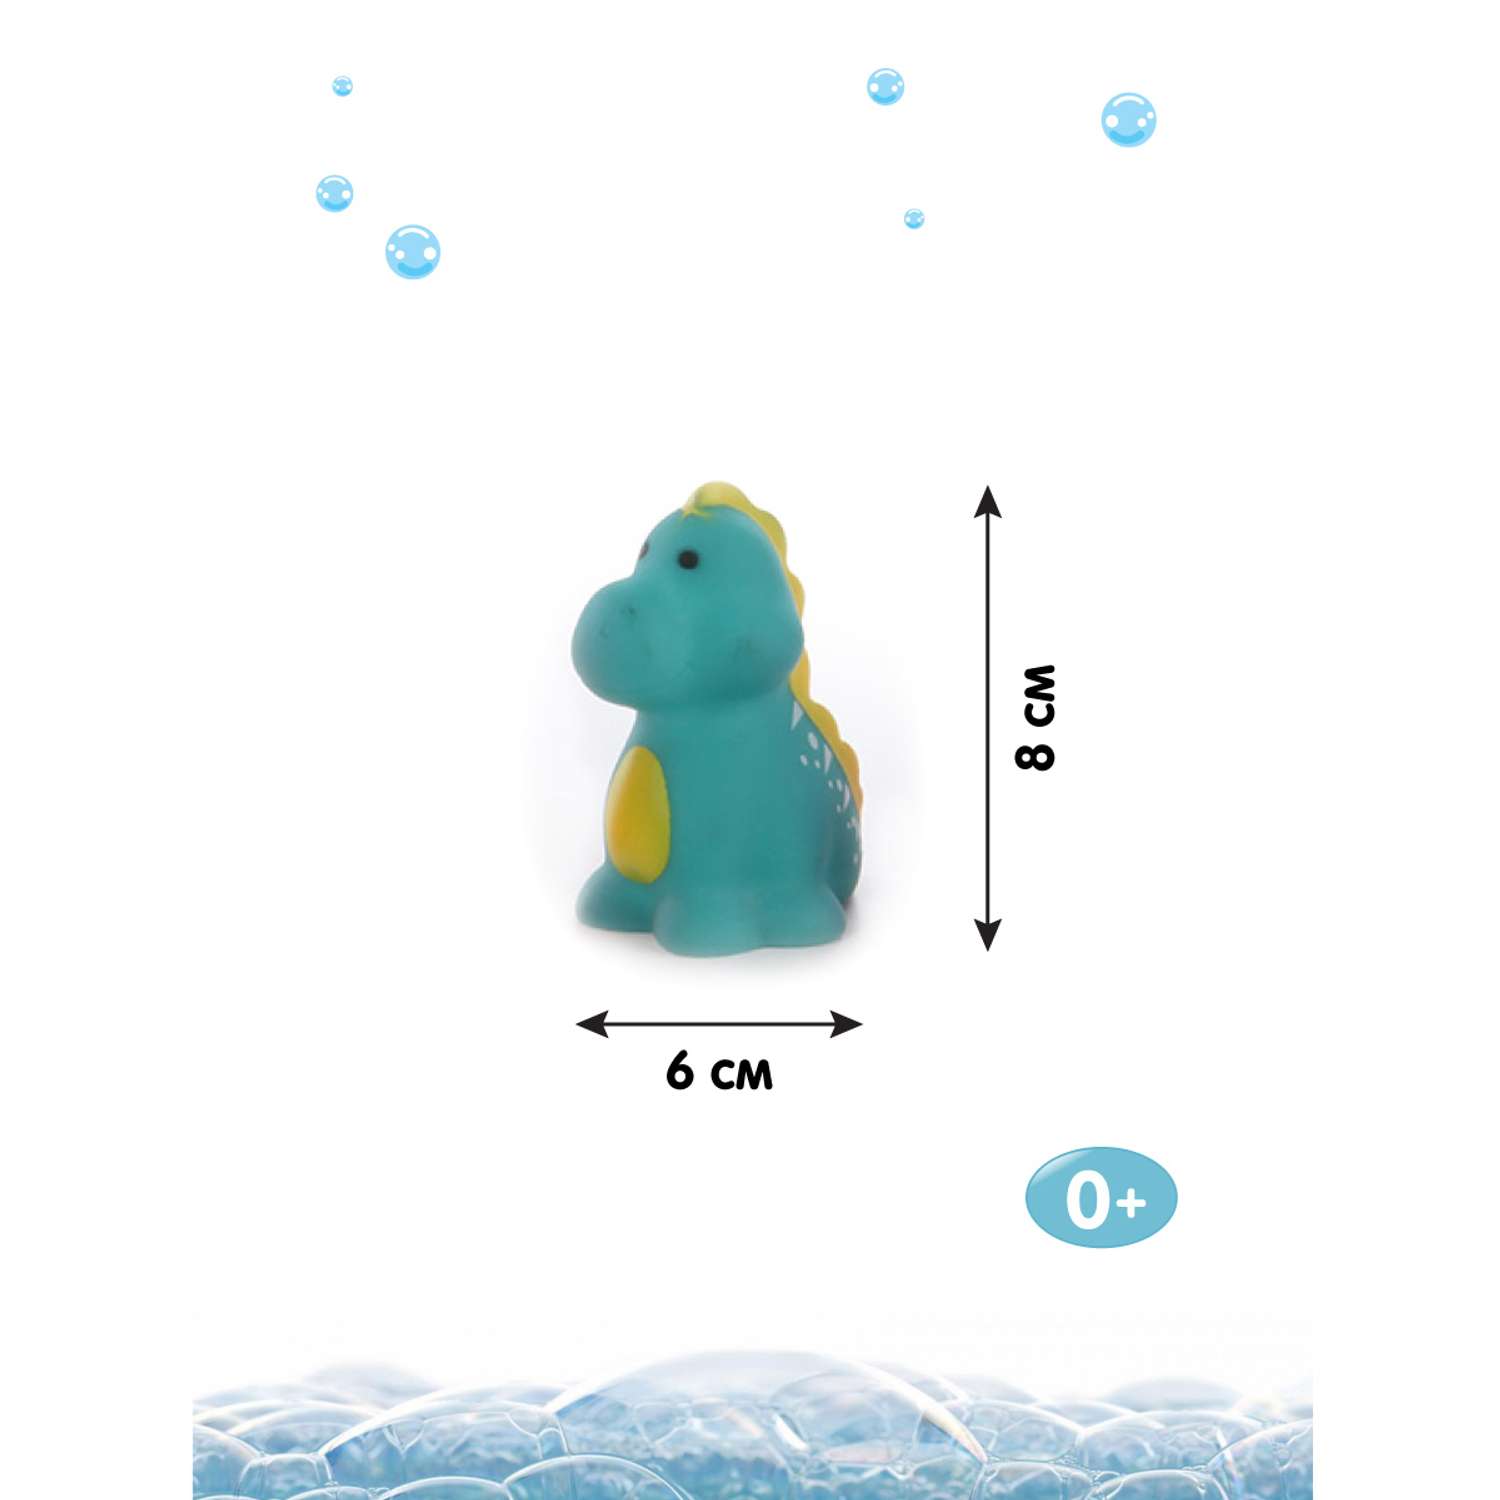 Игрушки для ванны Ути Пути Динозавры 5 игрушек - фото 2